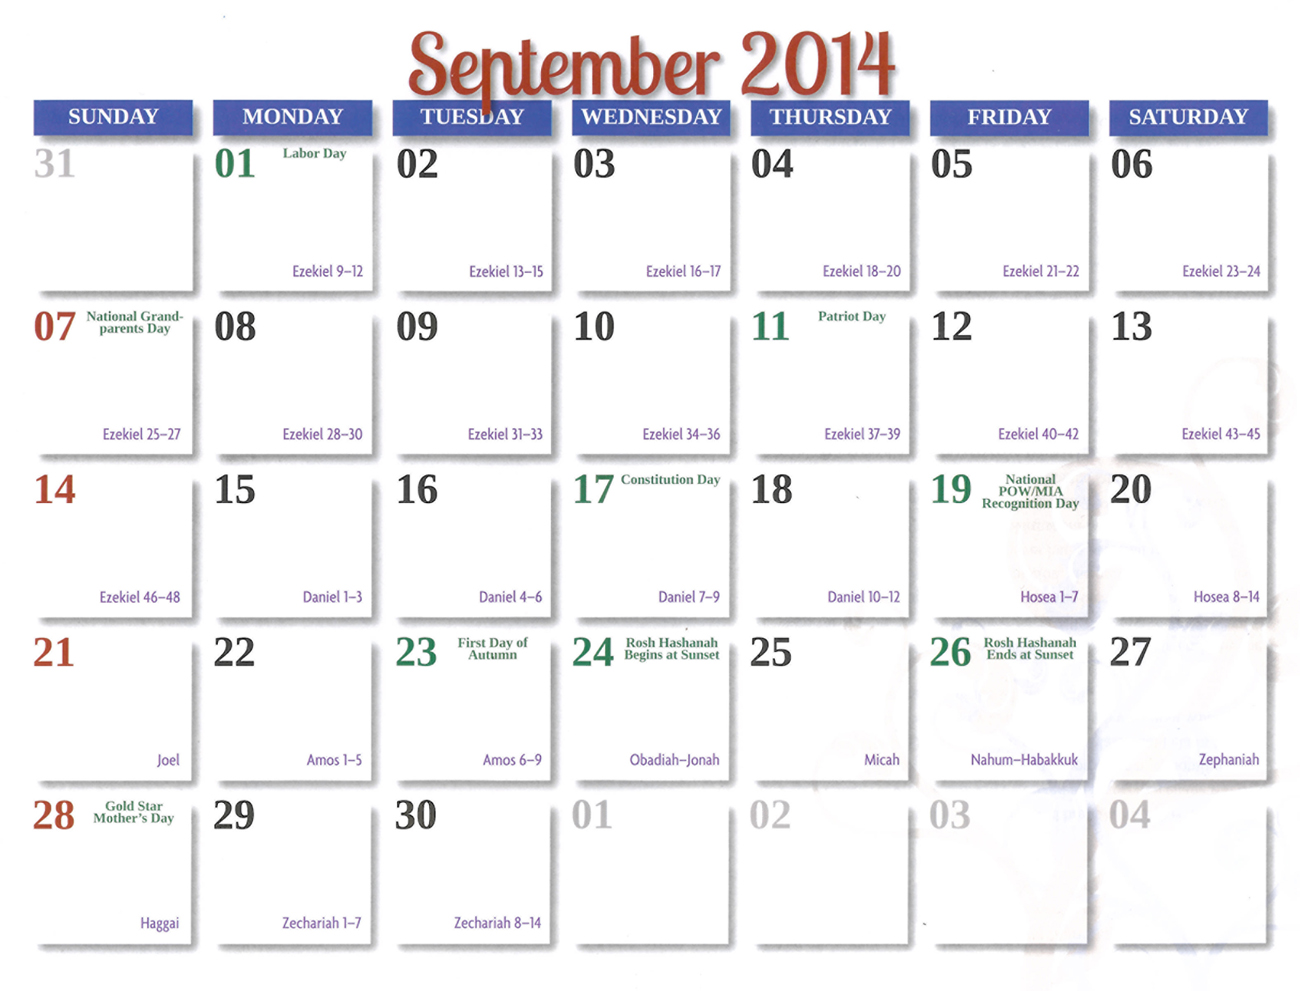 2014 Prophecy Calendar: September - Prophecies of Zechariah